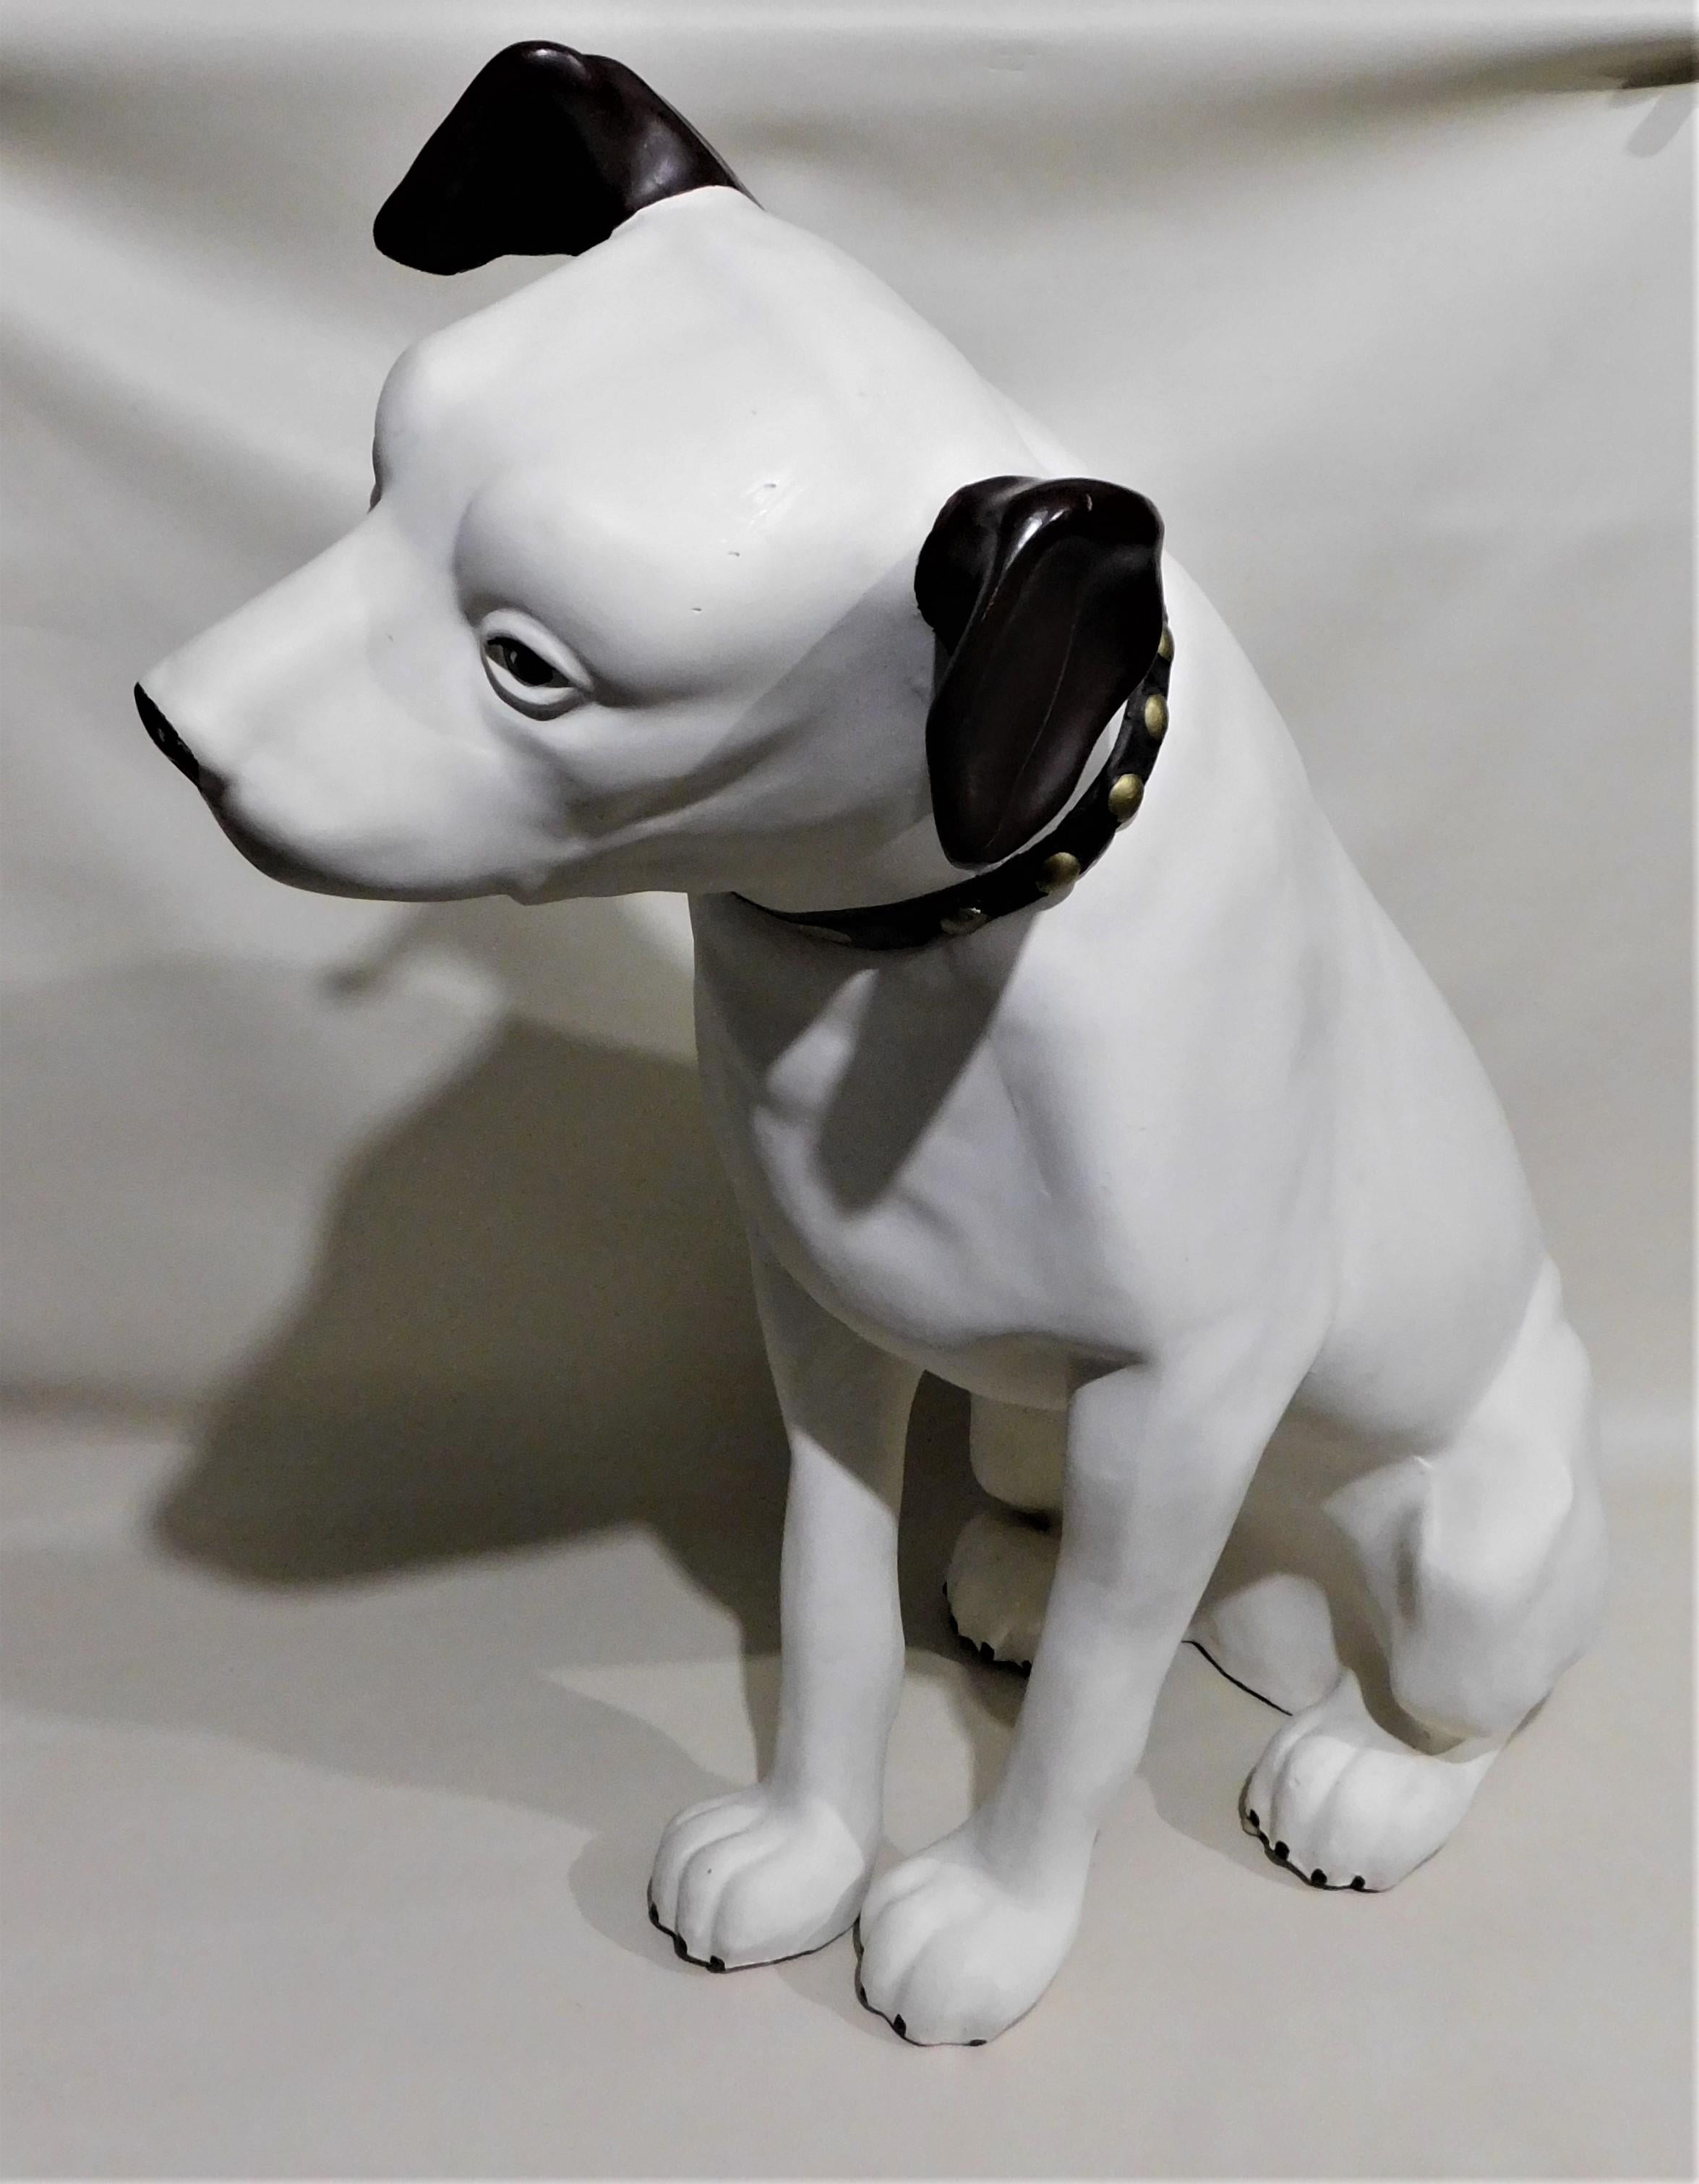 Seine Masters Stimme großen 34 Zoll Store Display 'Nipper' Hund In sehr gutem Zustand:: leichter Riss auf einem Ohr siehe Bilder. Dies ist die 3. Generation der Nipper aus Kunststoff oder Glasfaser. 

His Master's Voice (HMV) ist ein berühmtes